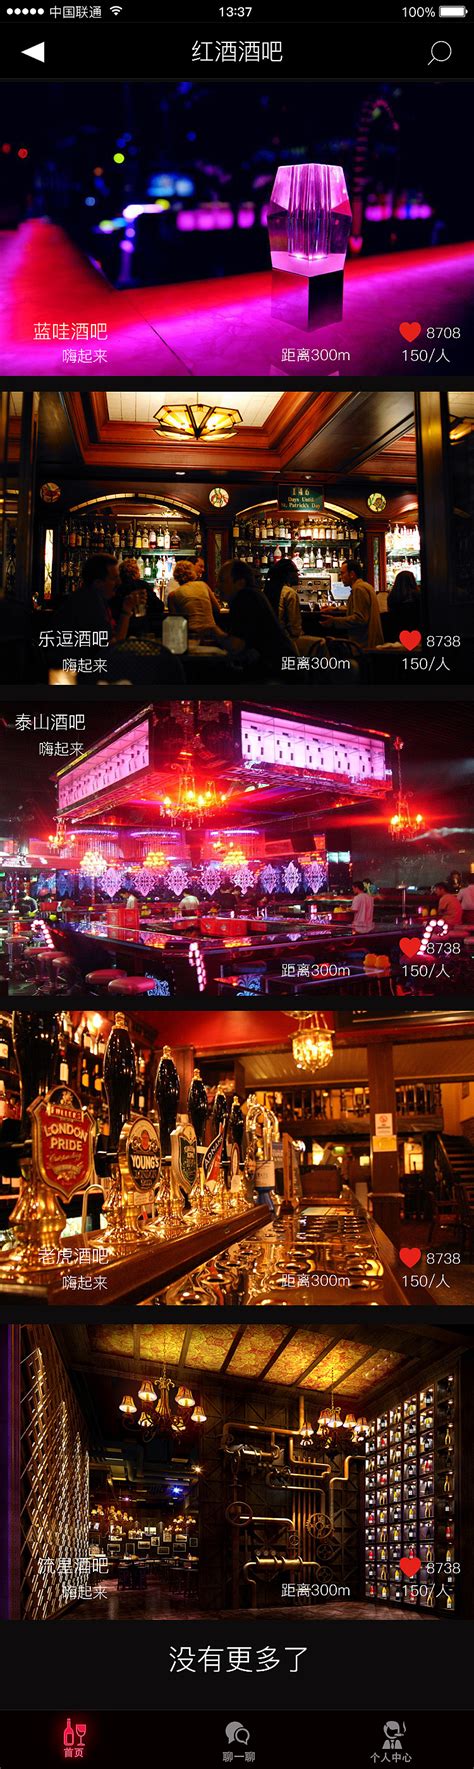 广州THE ONE酒吧消费价格 越秀区北京南路_广州酒吧预订